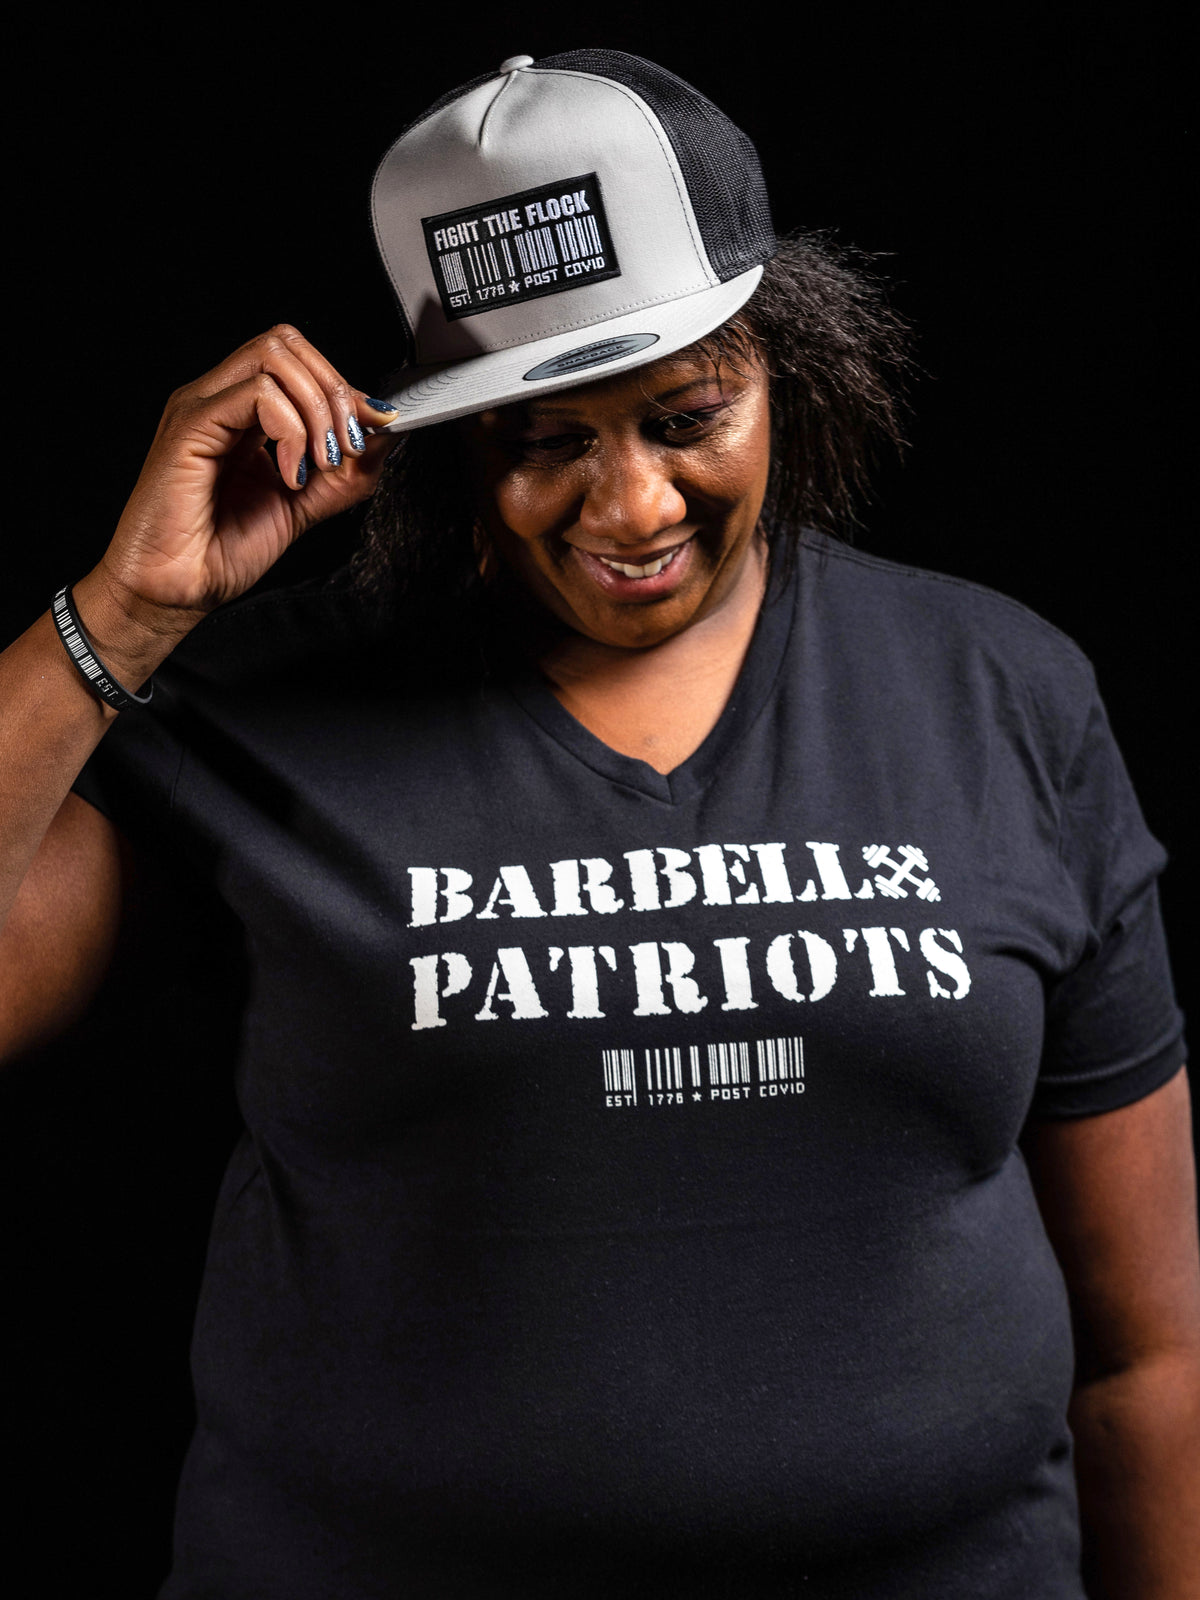 BARBELL PATRIOTS Womens V-Neck T-Shirt